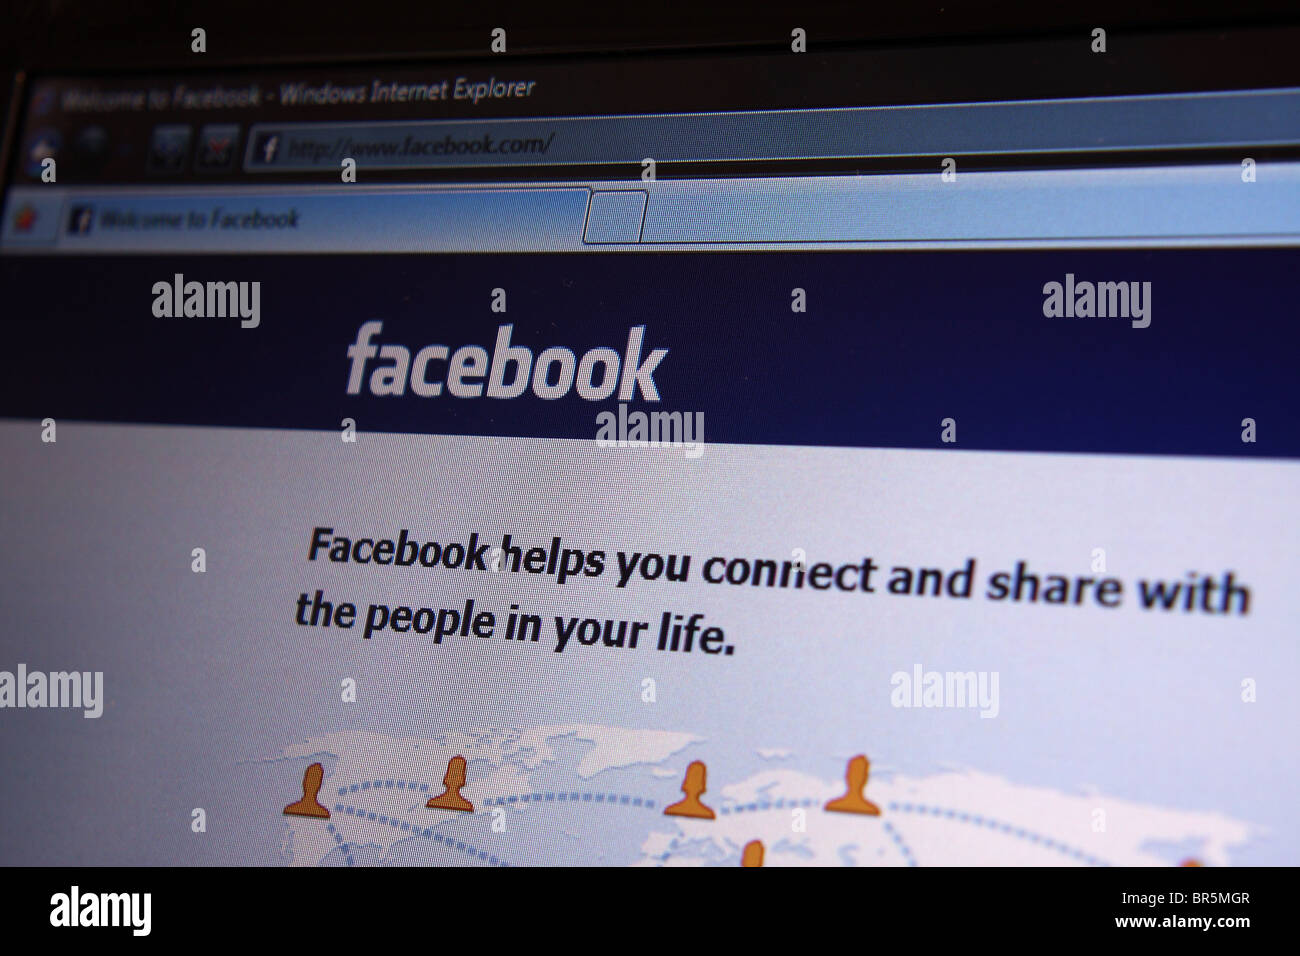 Facebook website login Stock Photo - Alamy